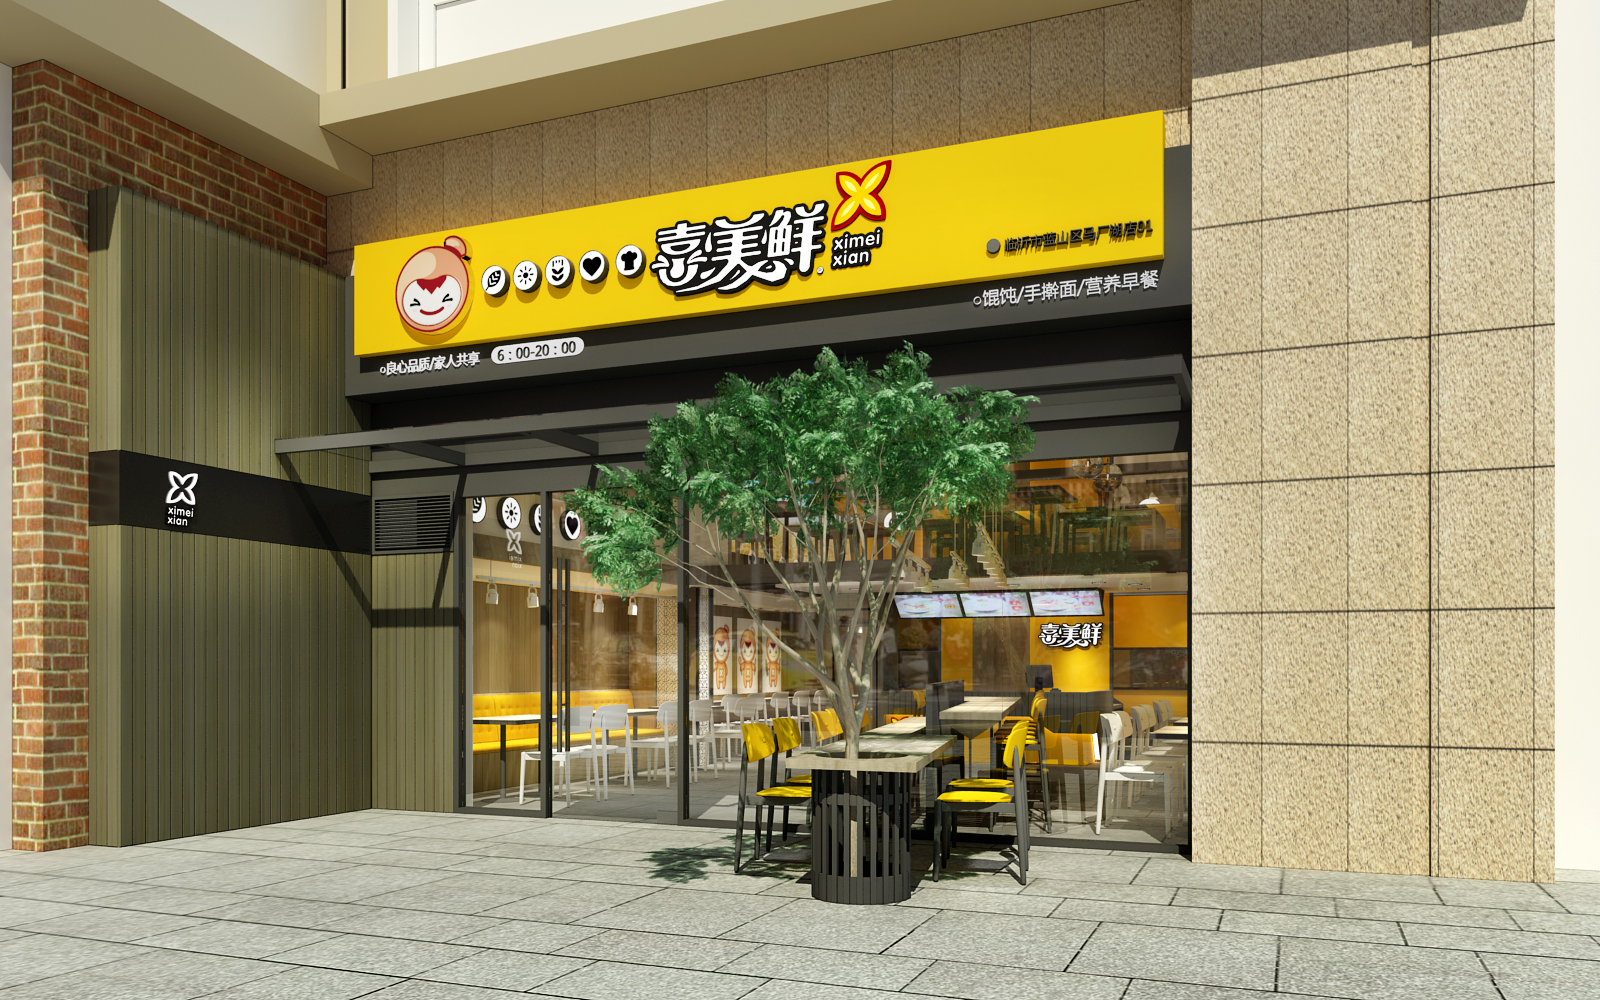 喜美鲜-中式快餐厅设计